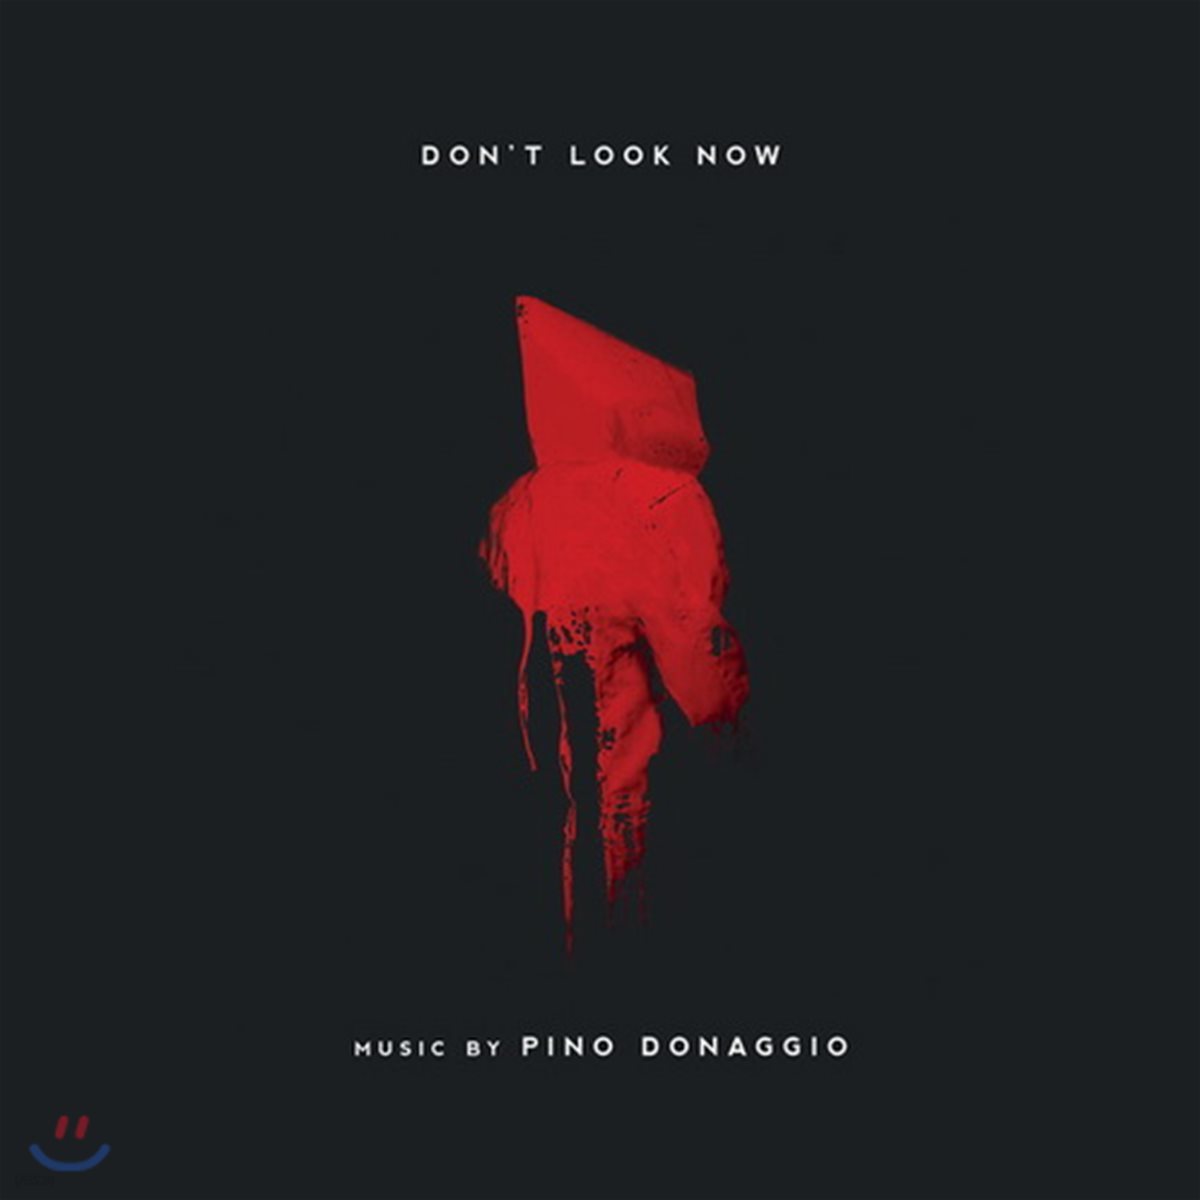 지금 보면 안 돼 영화음악 (Don't Look Now OST by Pino Donaggio 피노 도나지오)